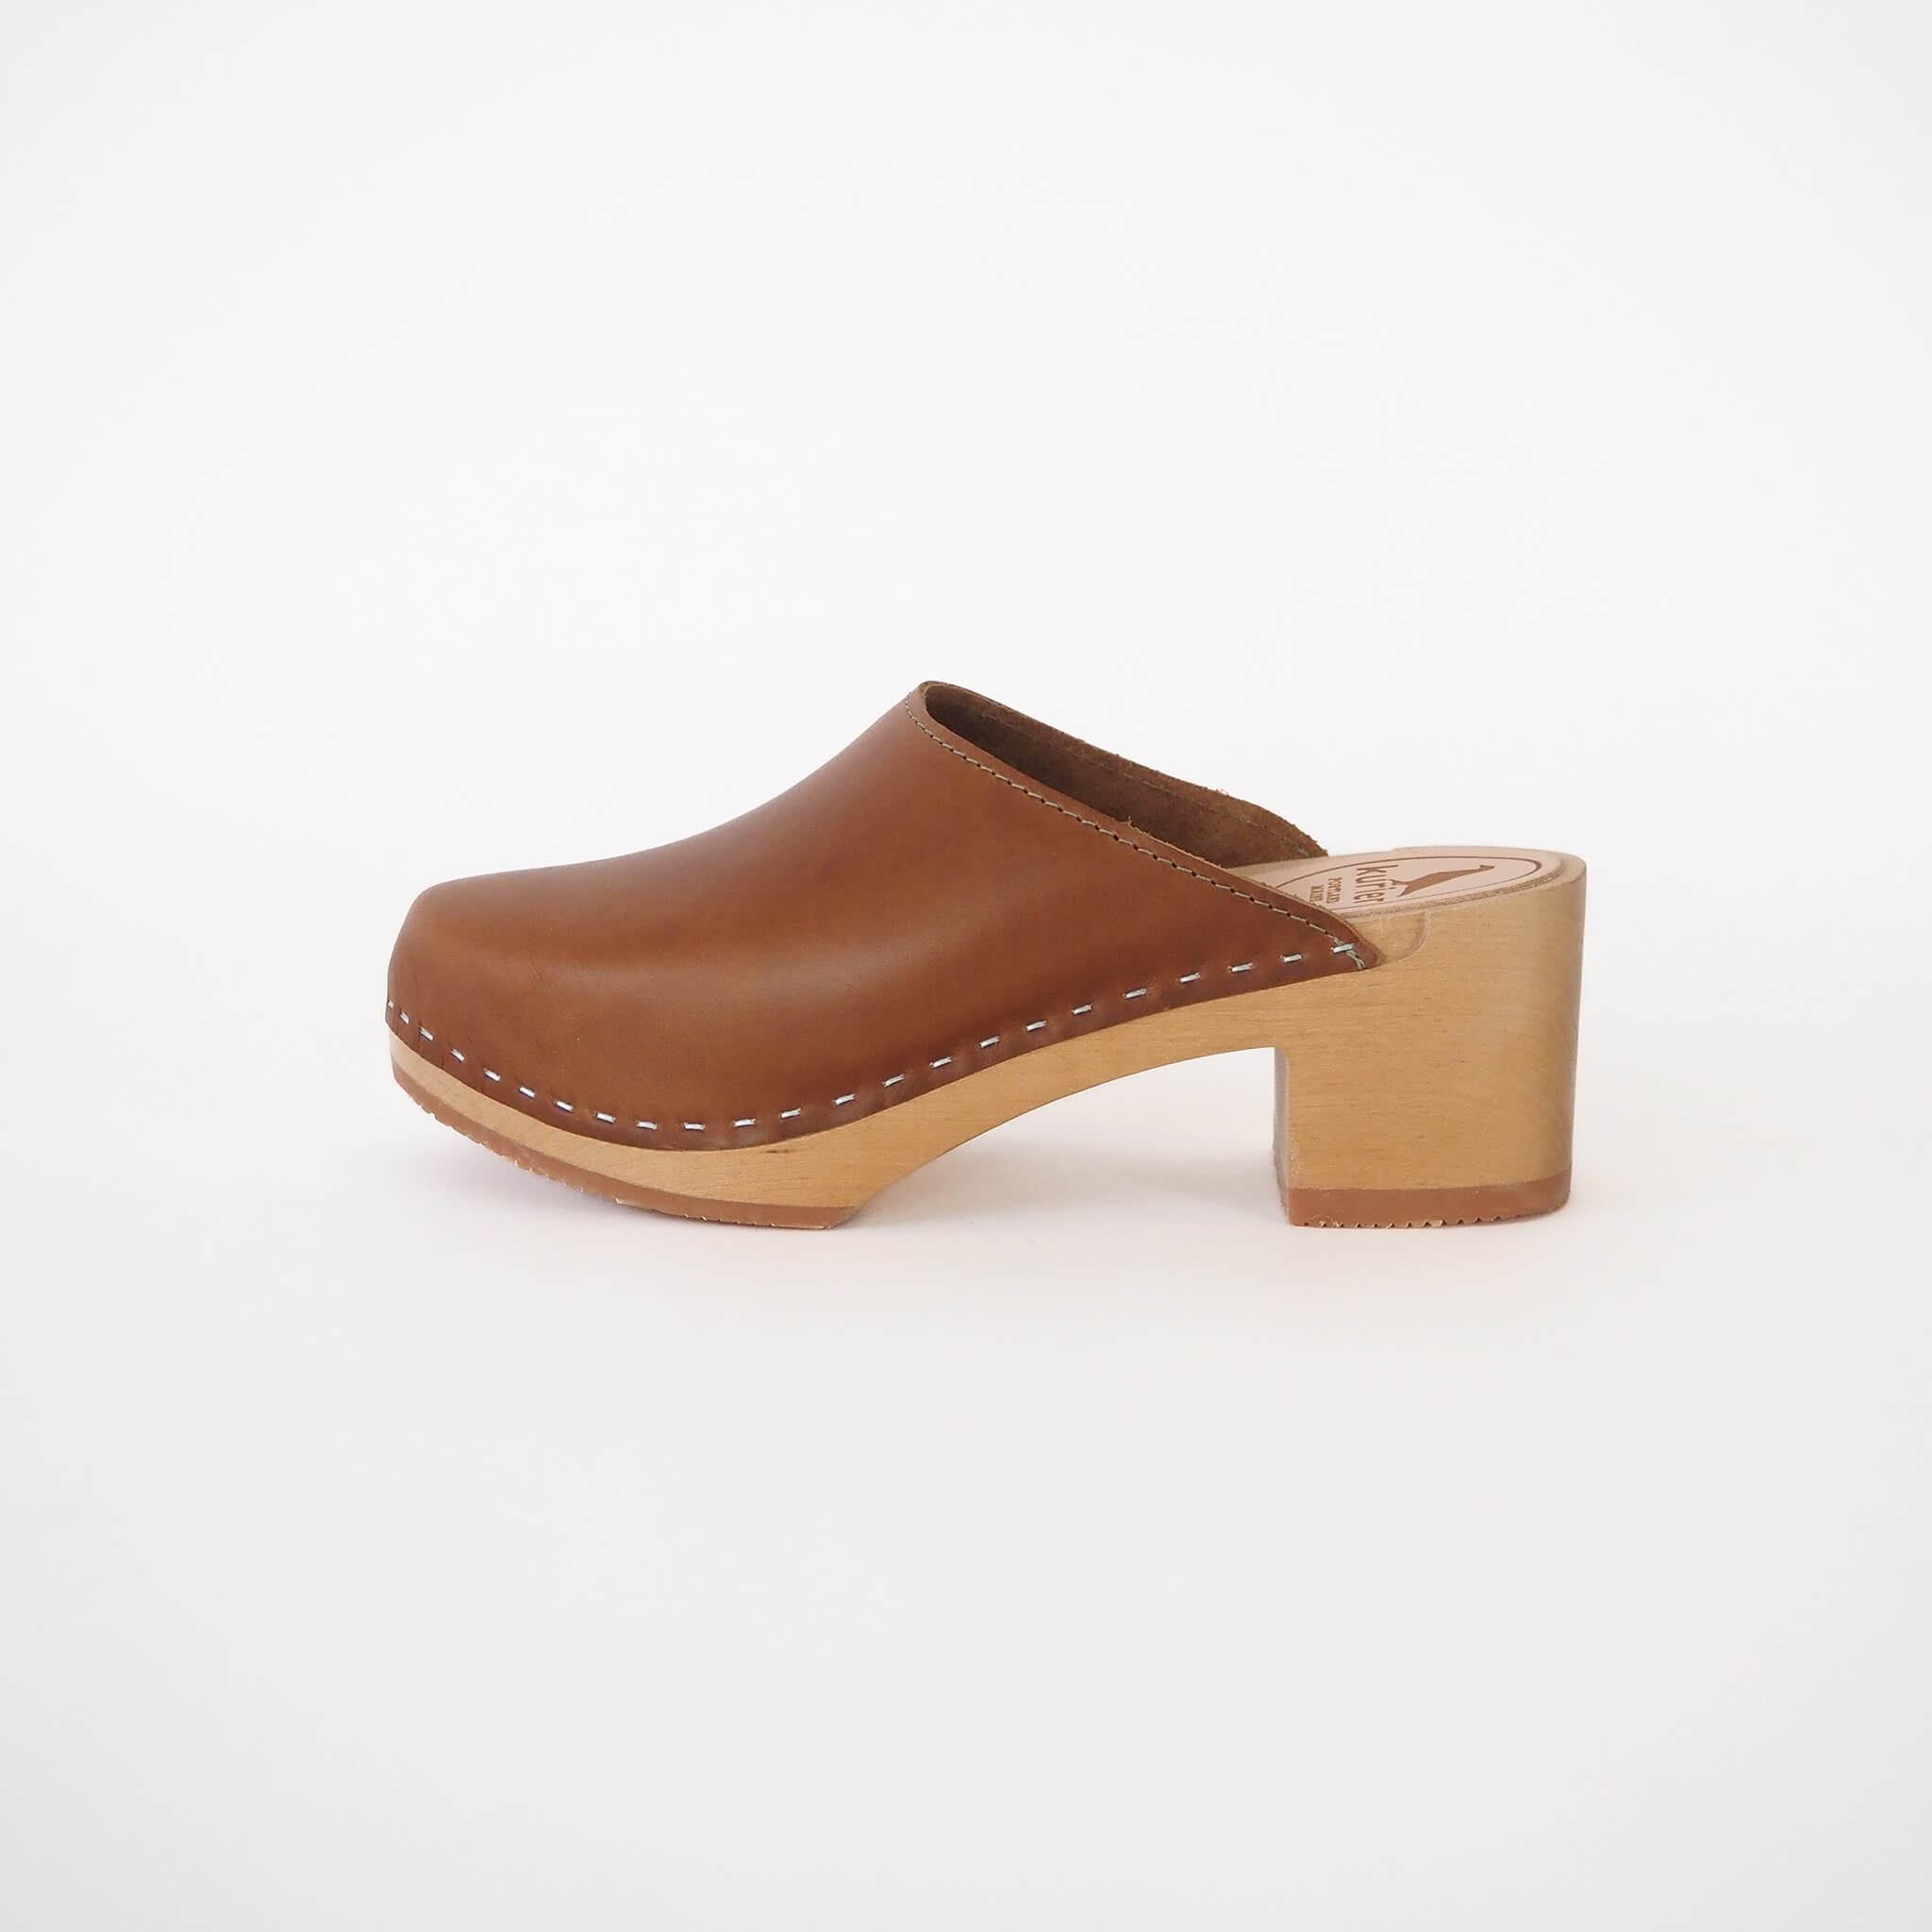 pepper clog high heel closed toe mule handmade american leather wood - pecan side view